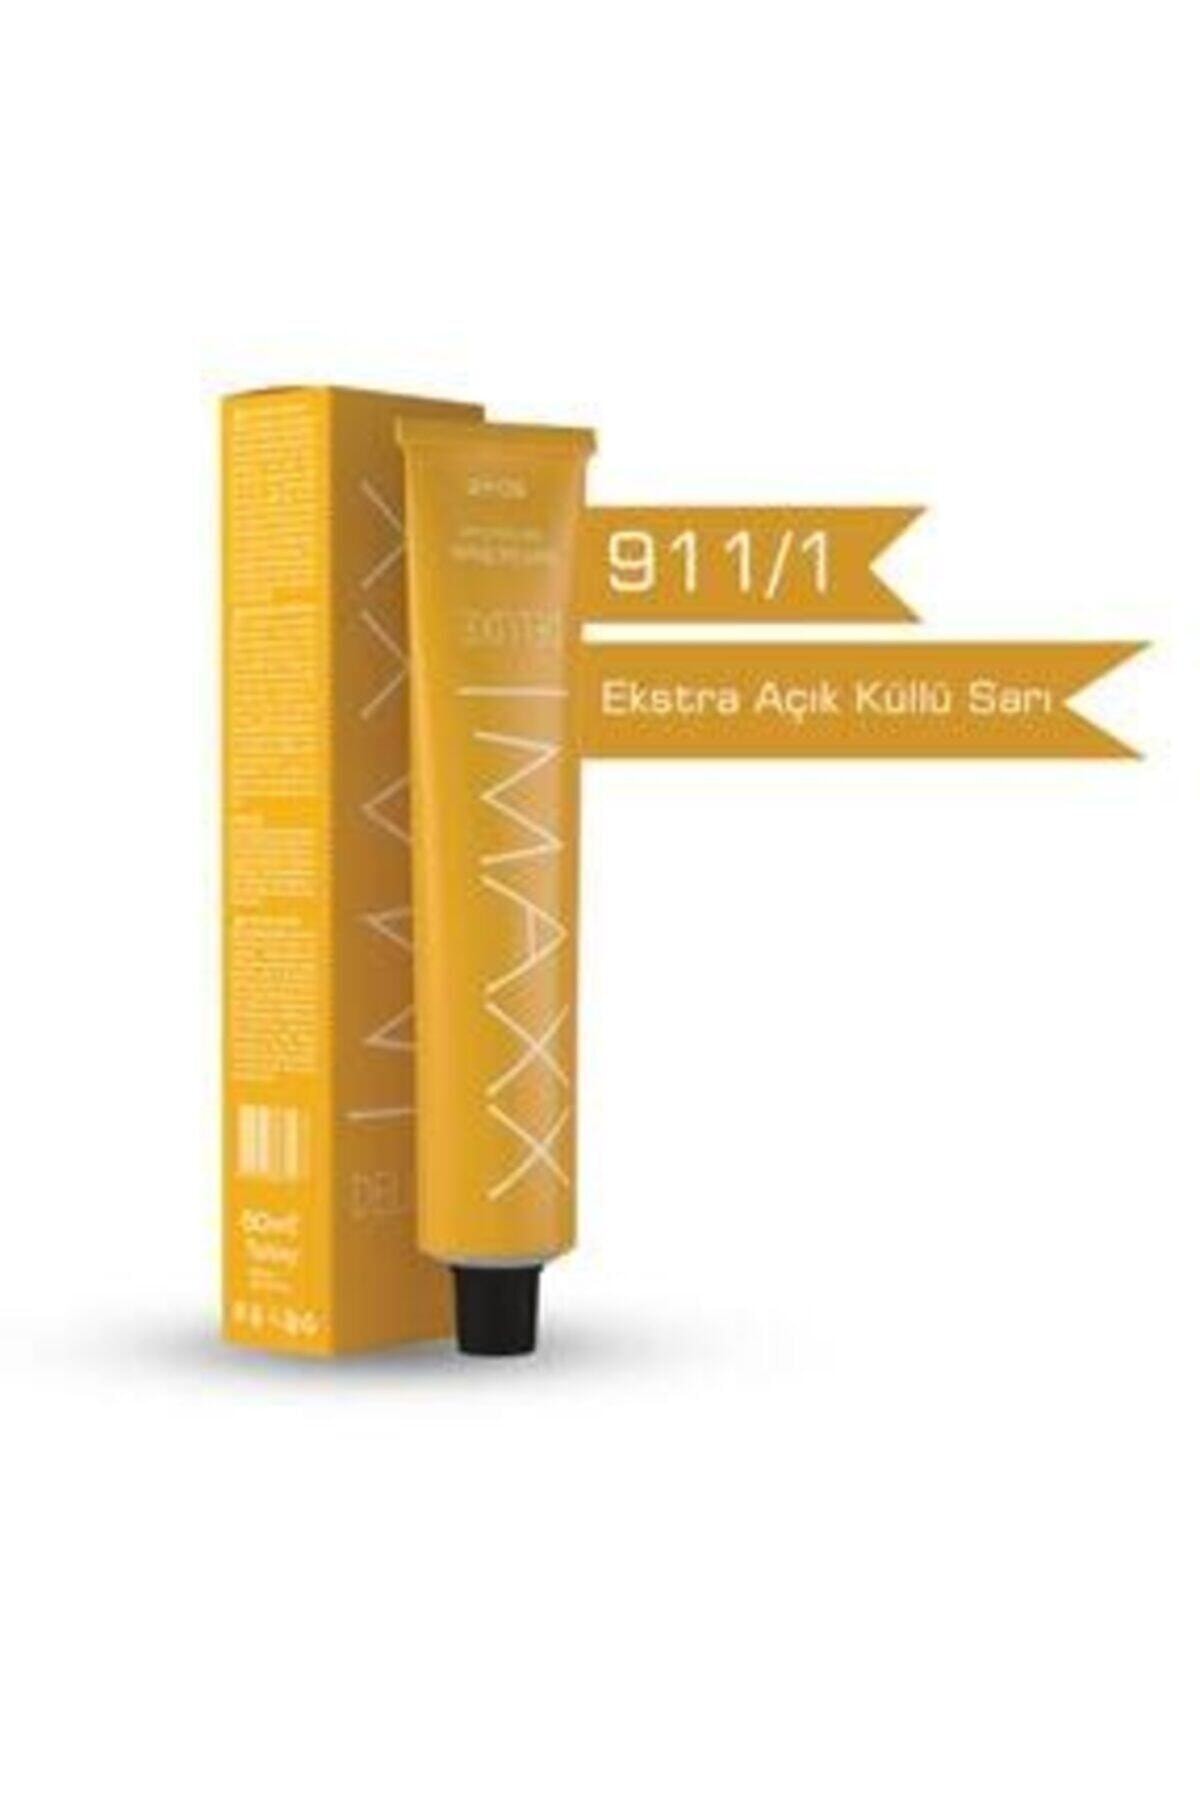 MAXX DELUXE 911/1 Ekstra Açıcı Küllü Sarı Krem Saç Boyası 60 ml